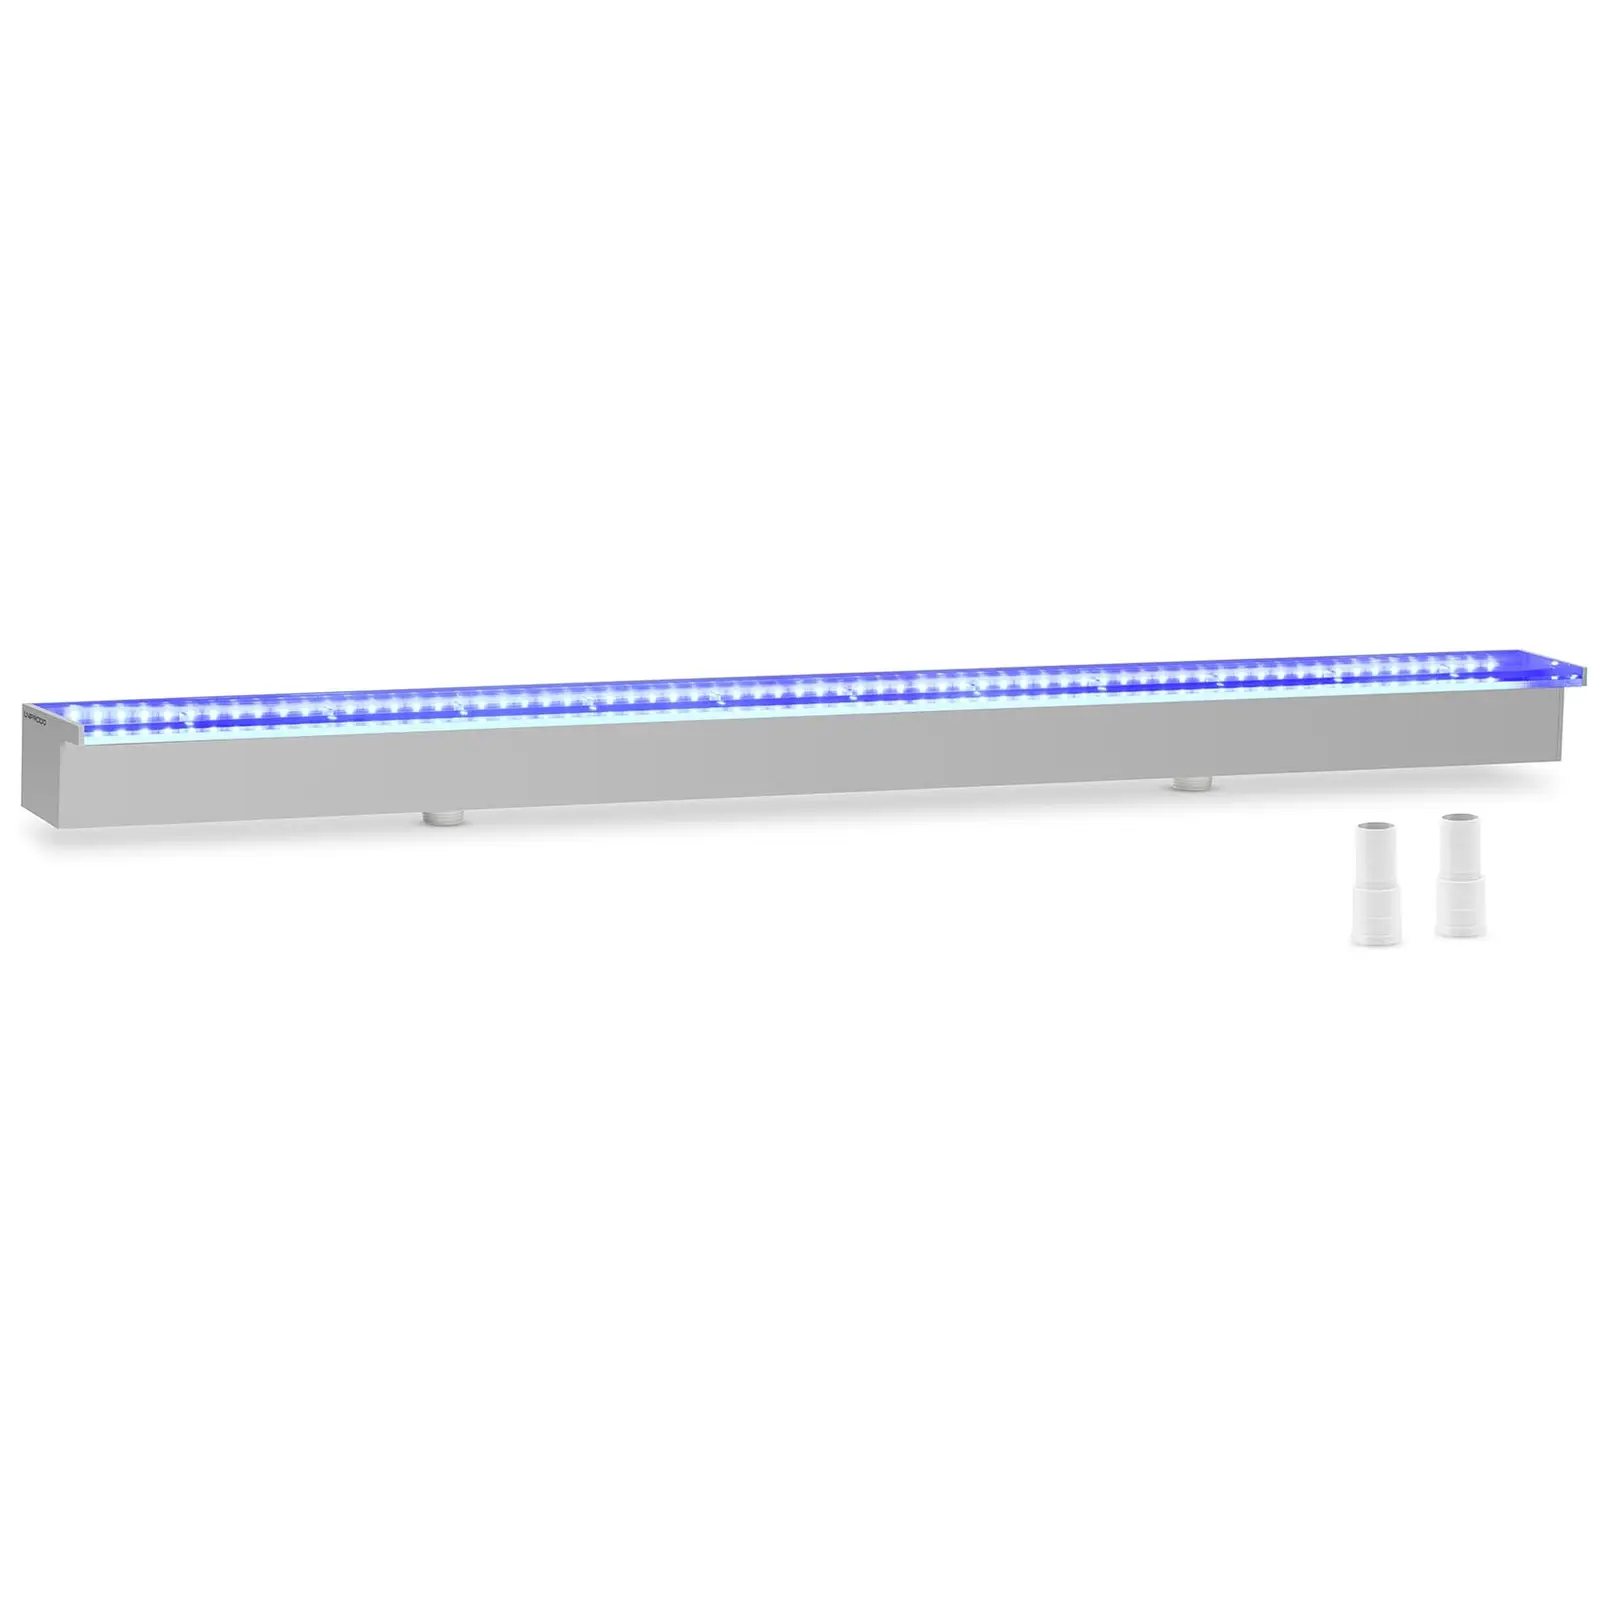 Chrlič vody 120 cm LED osvětlení modrá/bílá barva - Chrliče vody Uniprodo